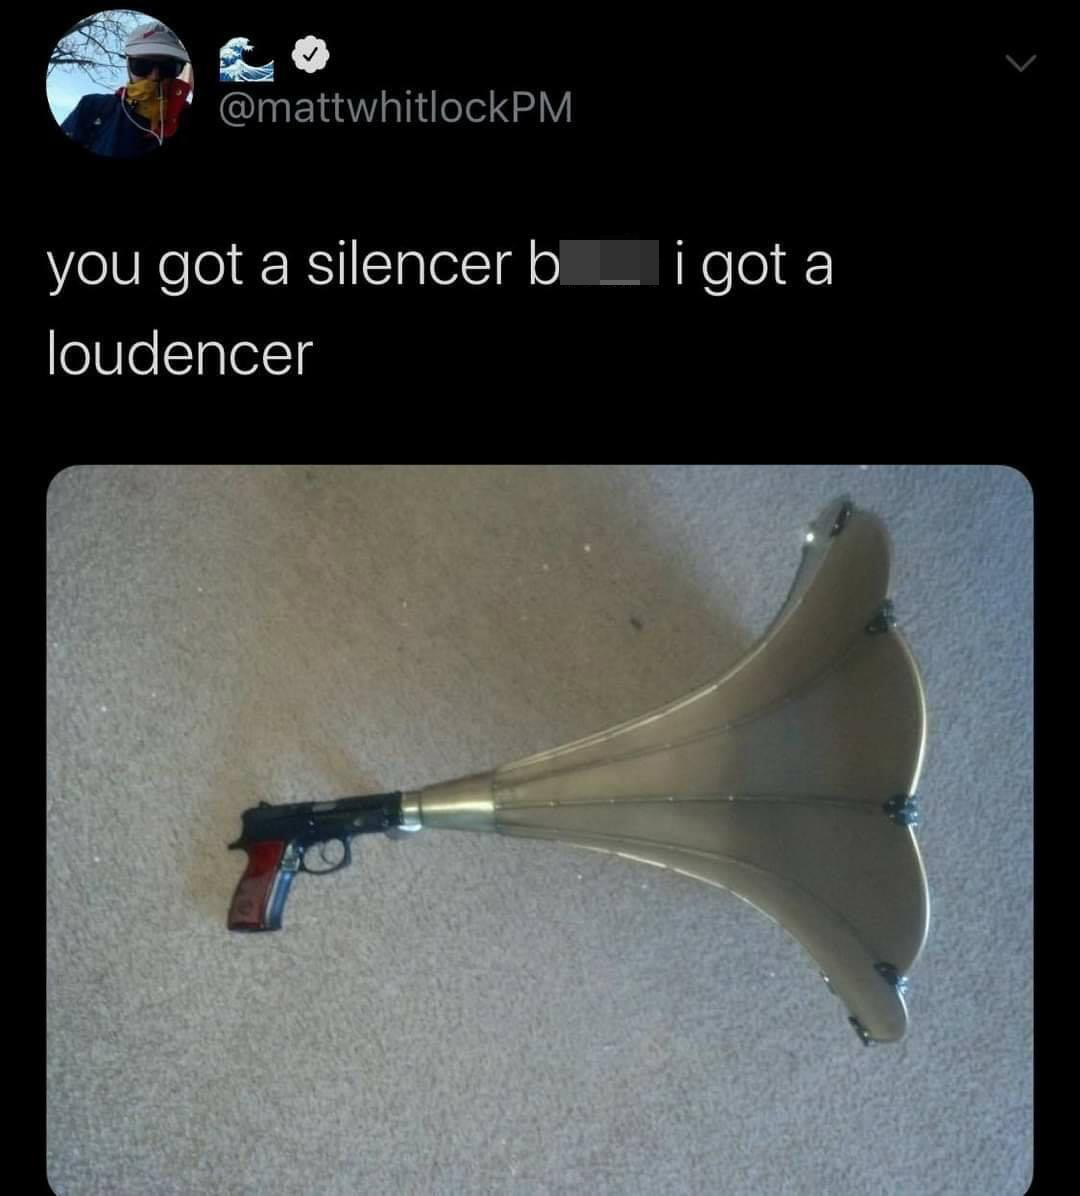 funny pics - you got a silencer i got a loudencer - you got a silencer b__ i got a loudencer